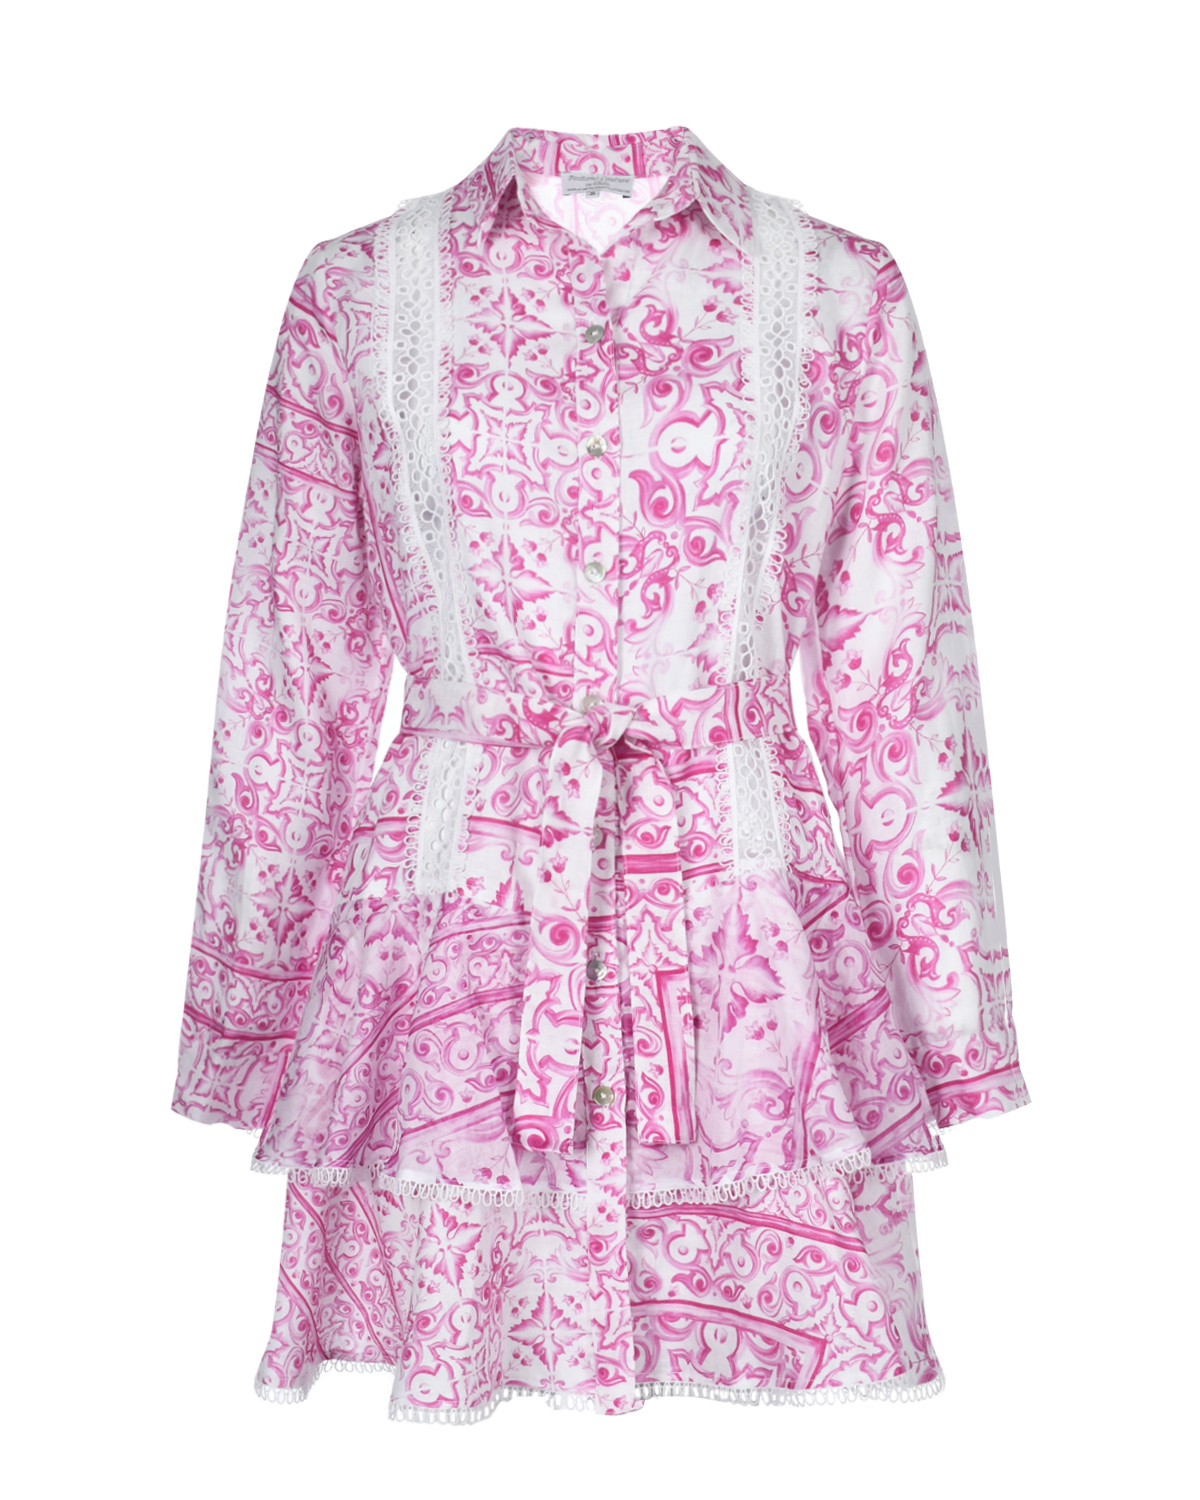 Льняное платье со сплошным принтом "Майолика" Positano Couture, размер 38, цвет нет цвета - фото 1